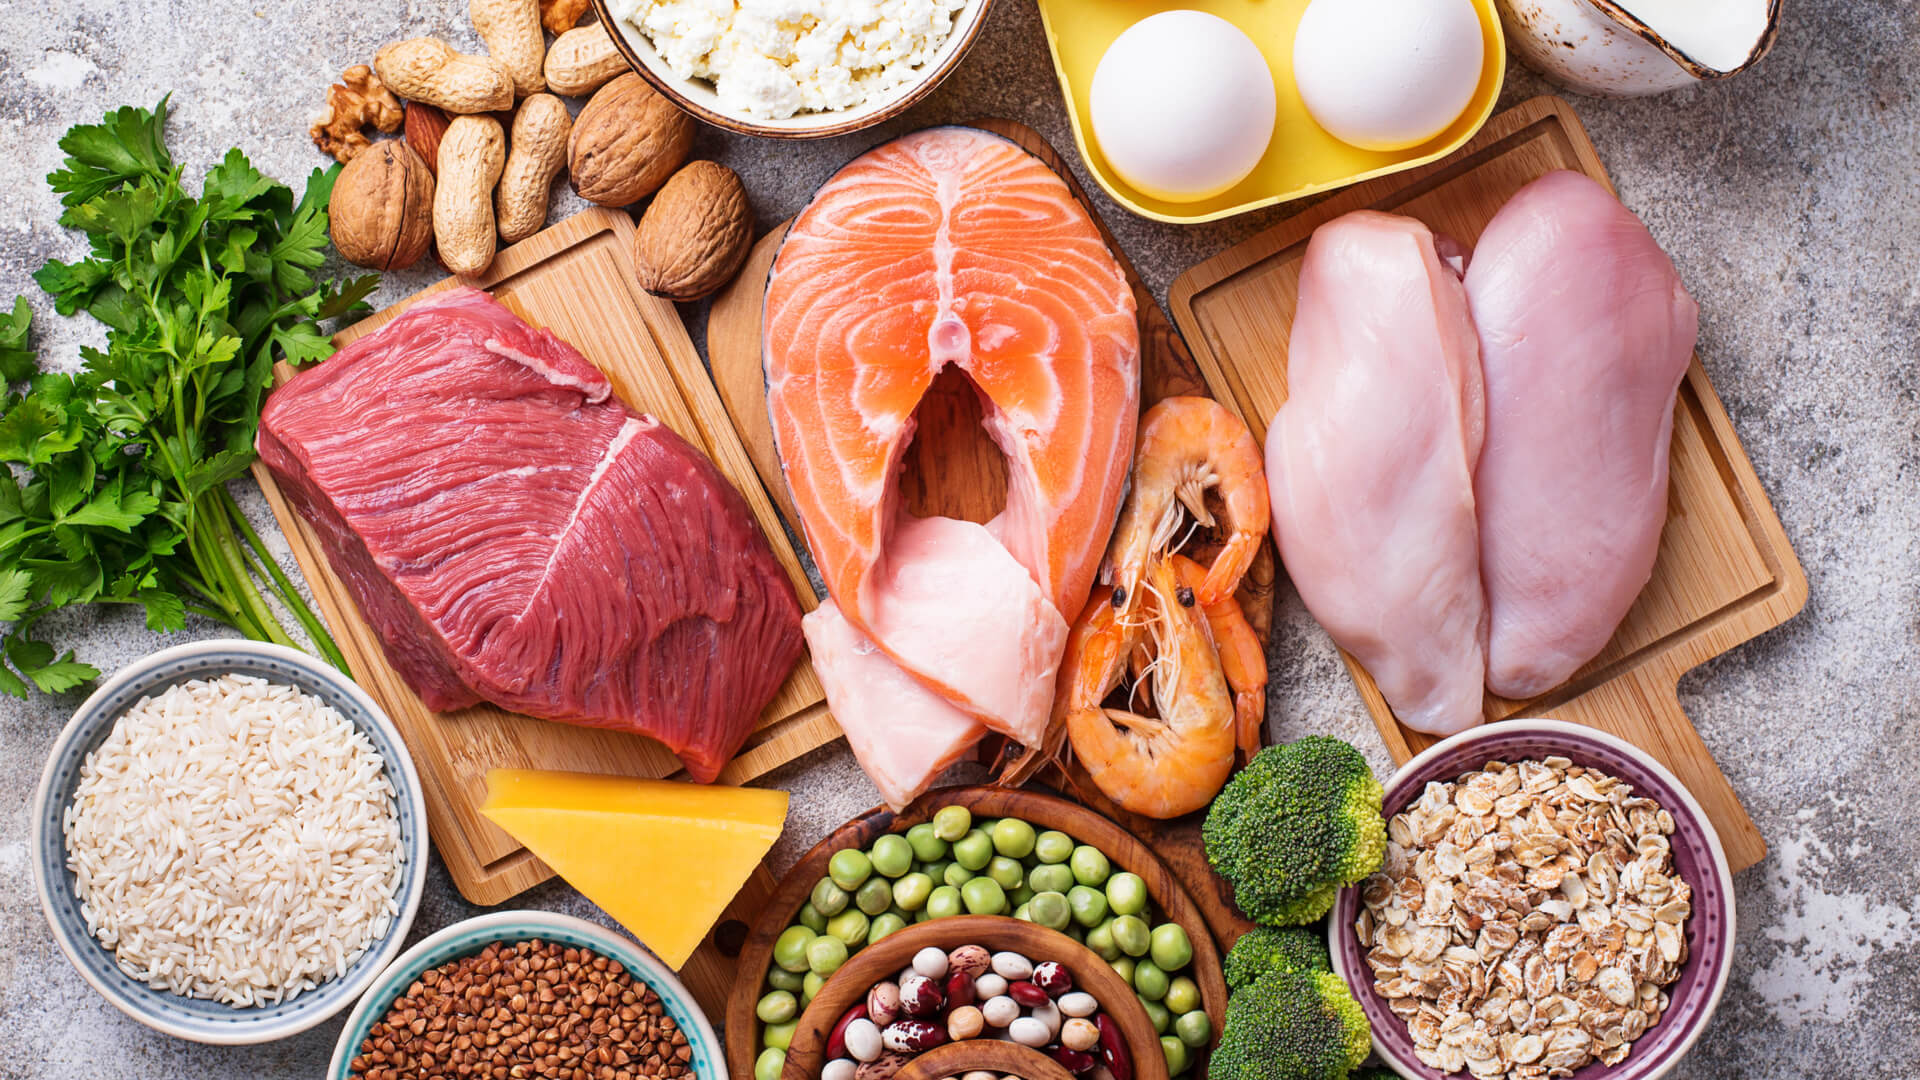 Alimentos saludables ricos en proteínas. Carne, pescado, productos lácteos, frutos secos y frijoles.